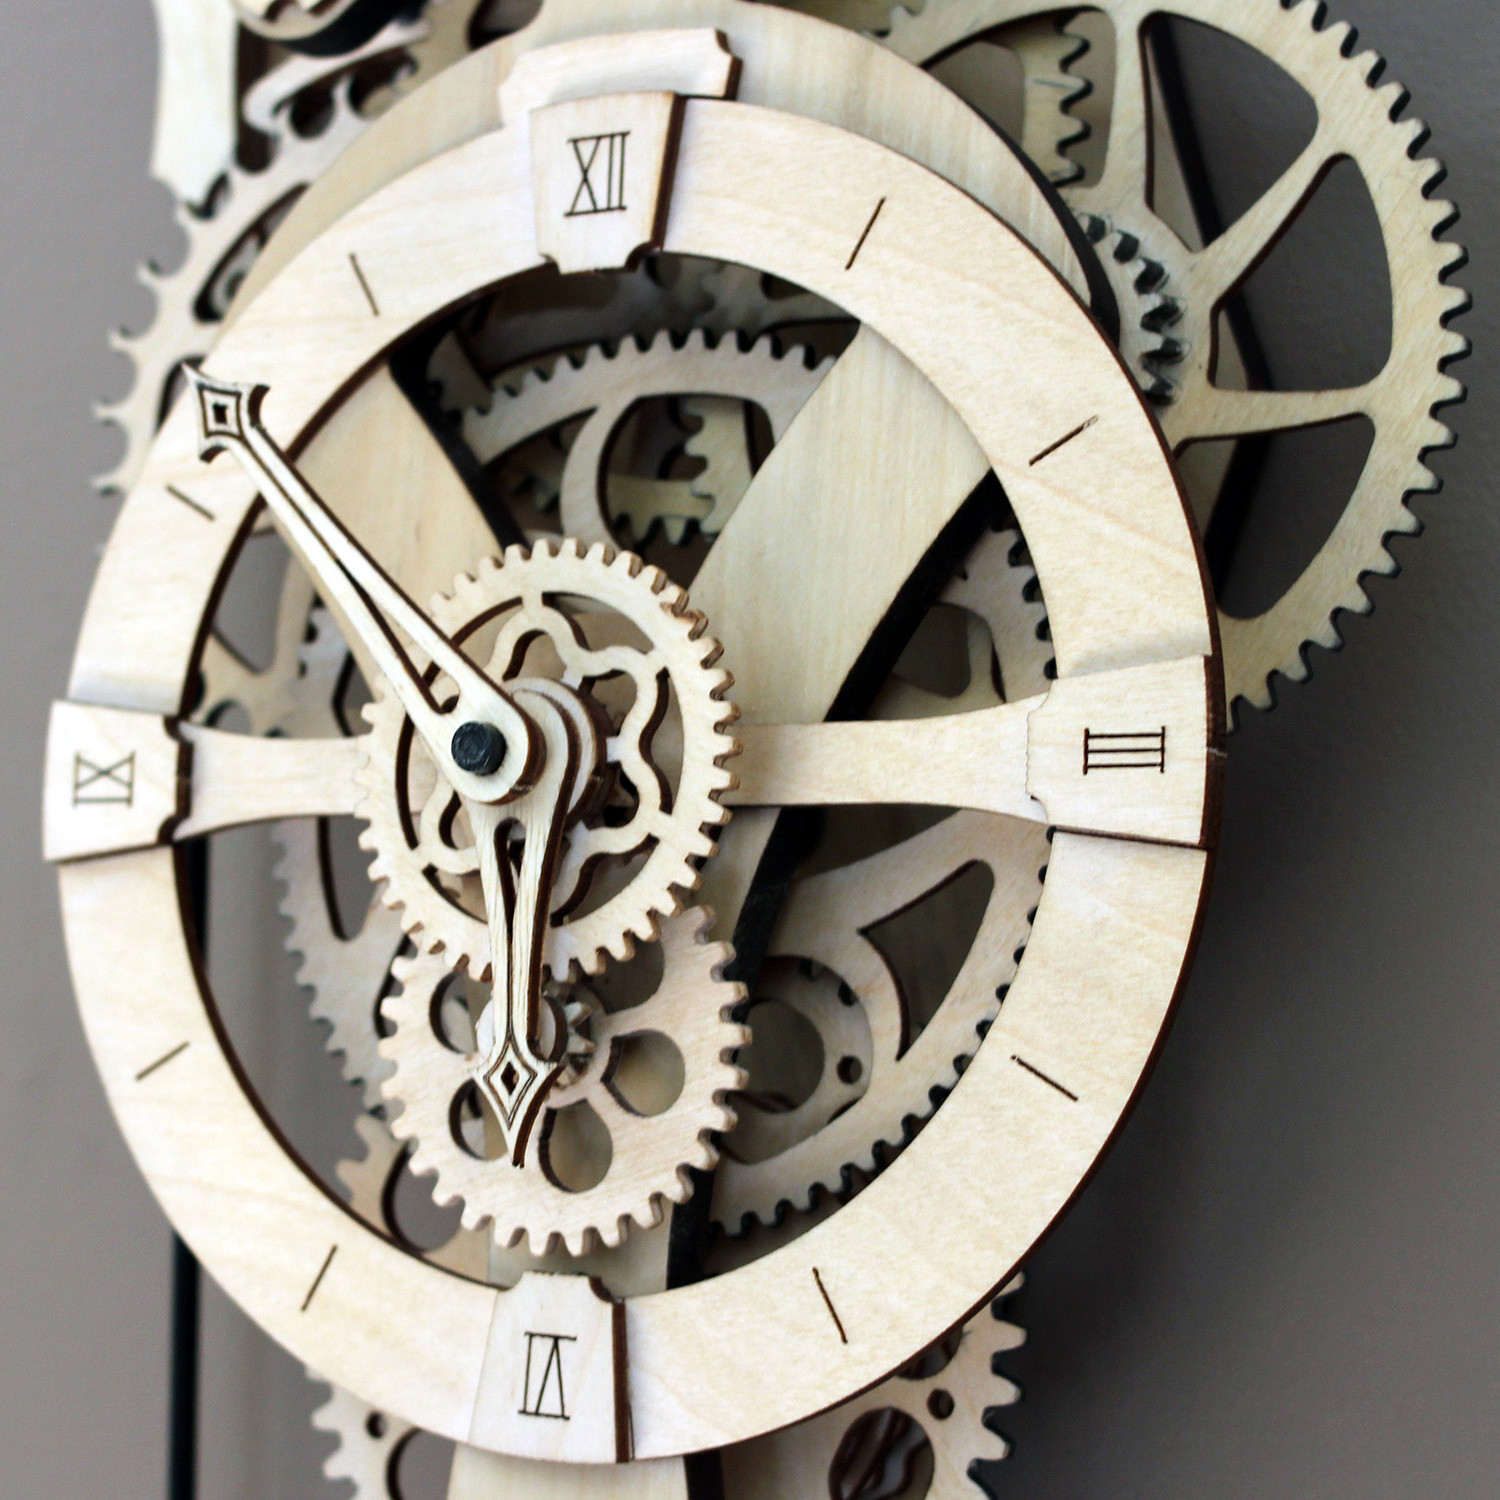 David Wooden Gear Wall Clock Kit - Abong - Touch of Modern
